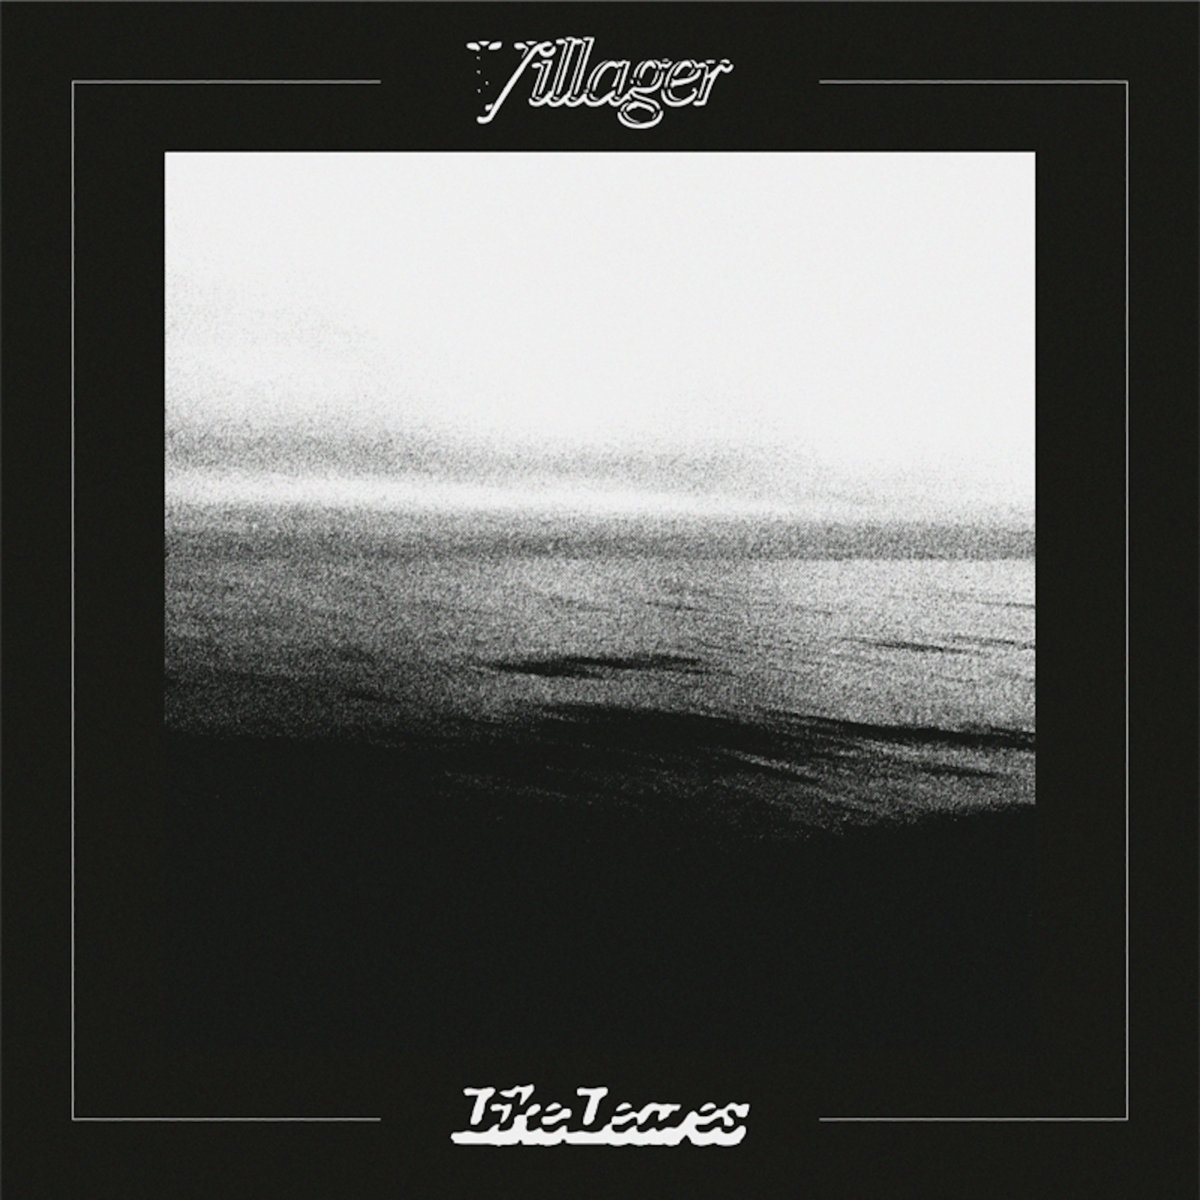 Like Leaves – villagerrr (album review)